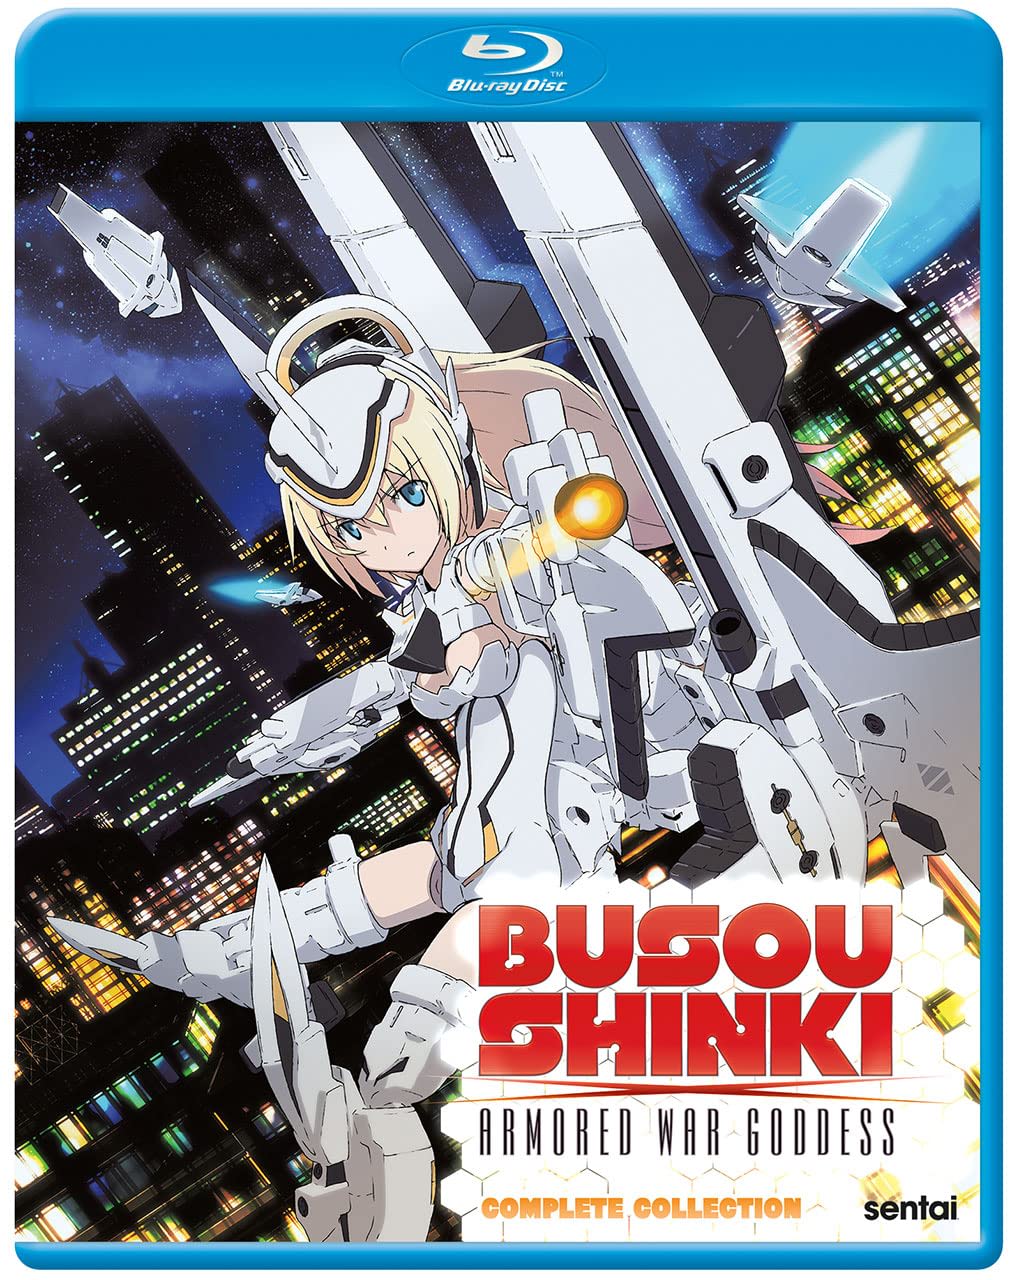 Busou Shinki: Complete Collection on MovieShack